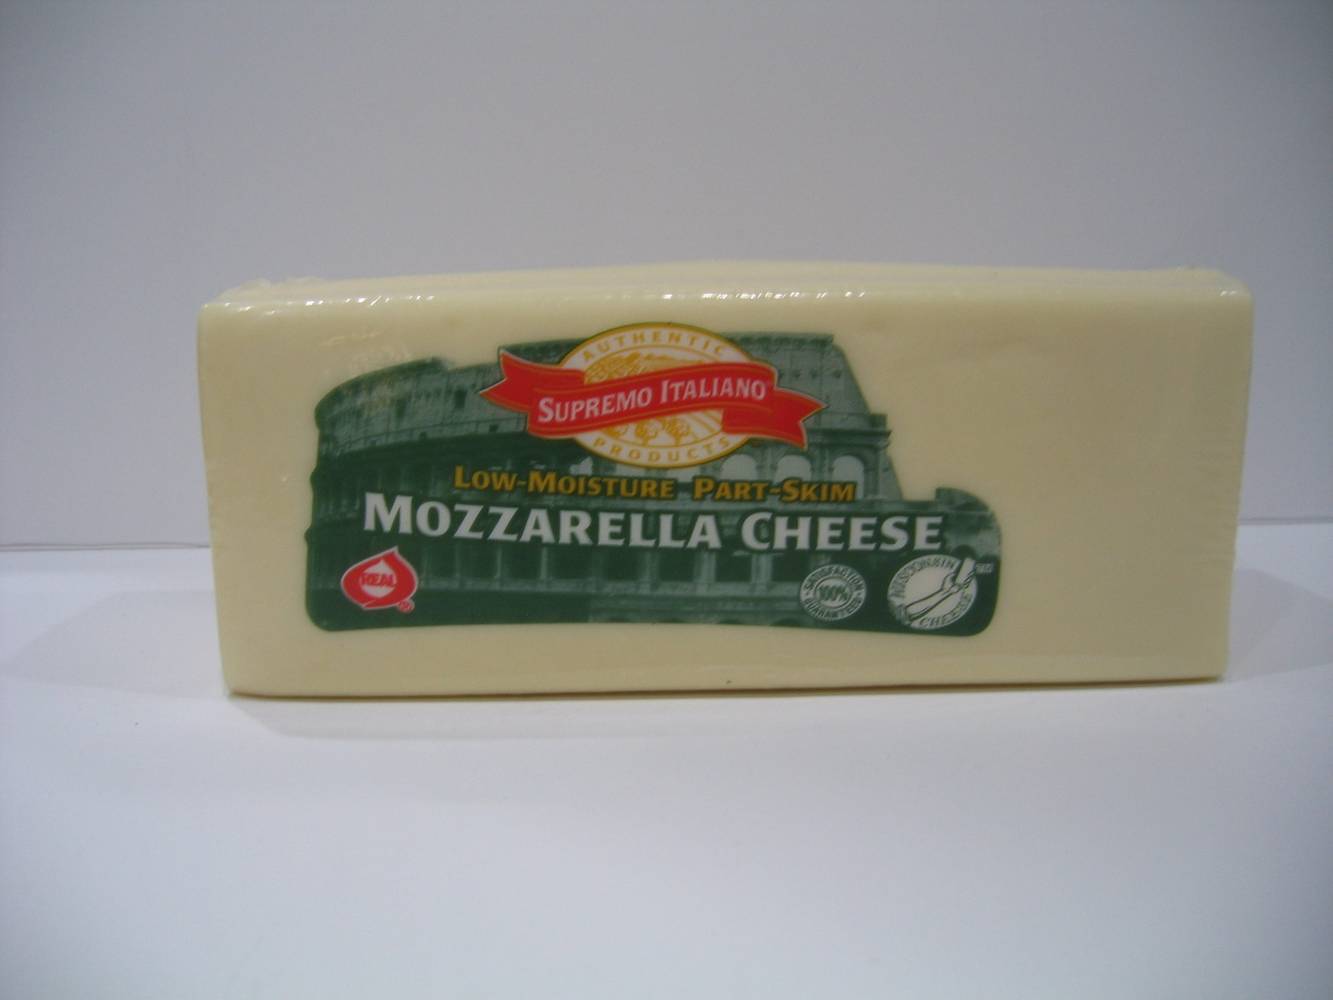 Supremo Italiano - Part Skim Mozzarella Cheese (1 Unit per Case)